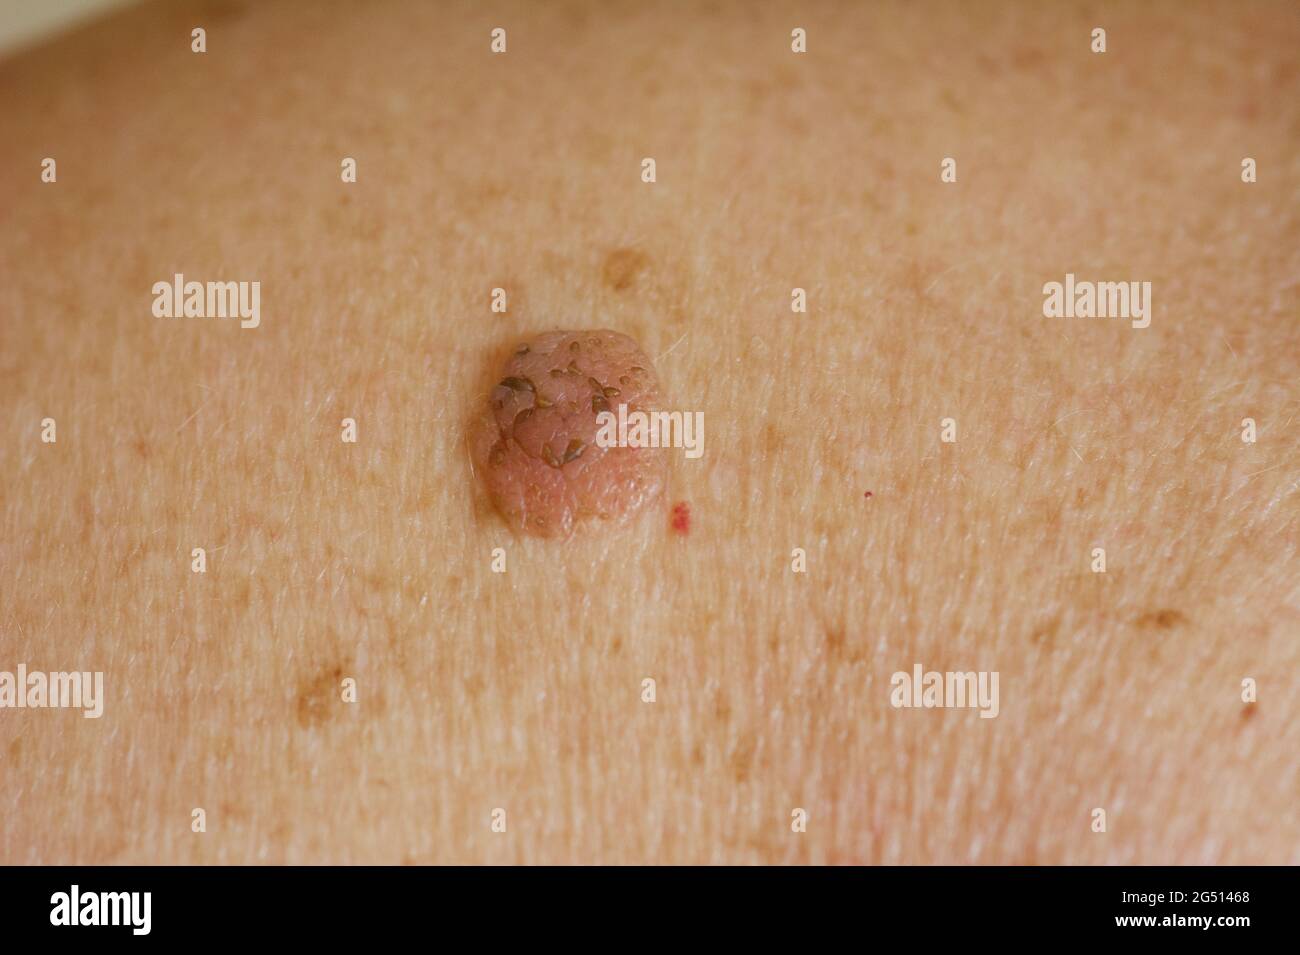 Gros plan de la mole sur la peau humaine Banque D'Images